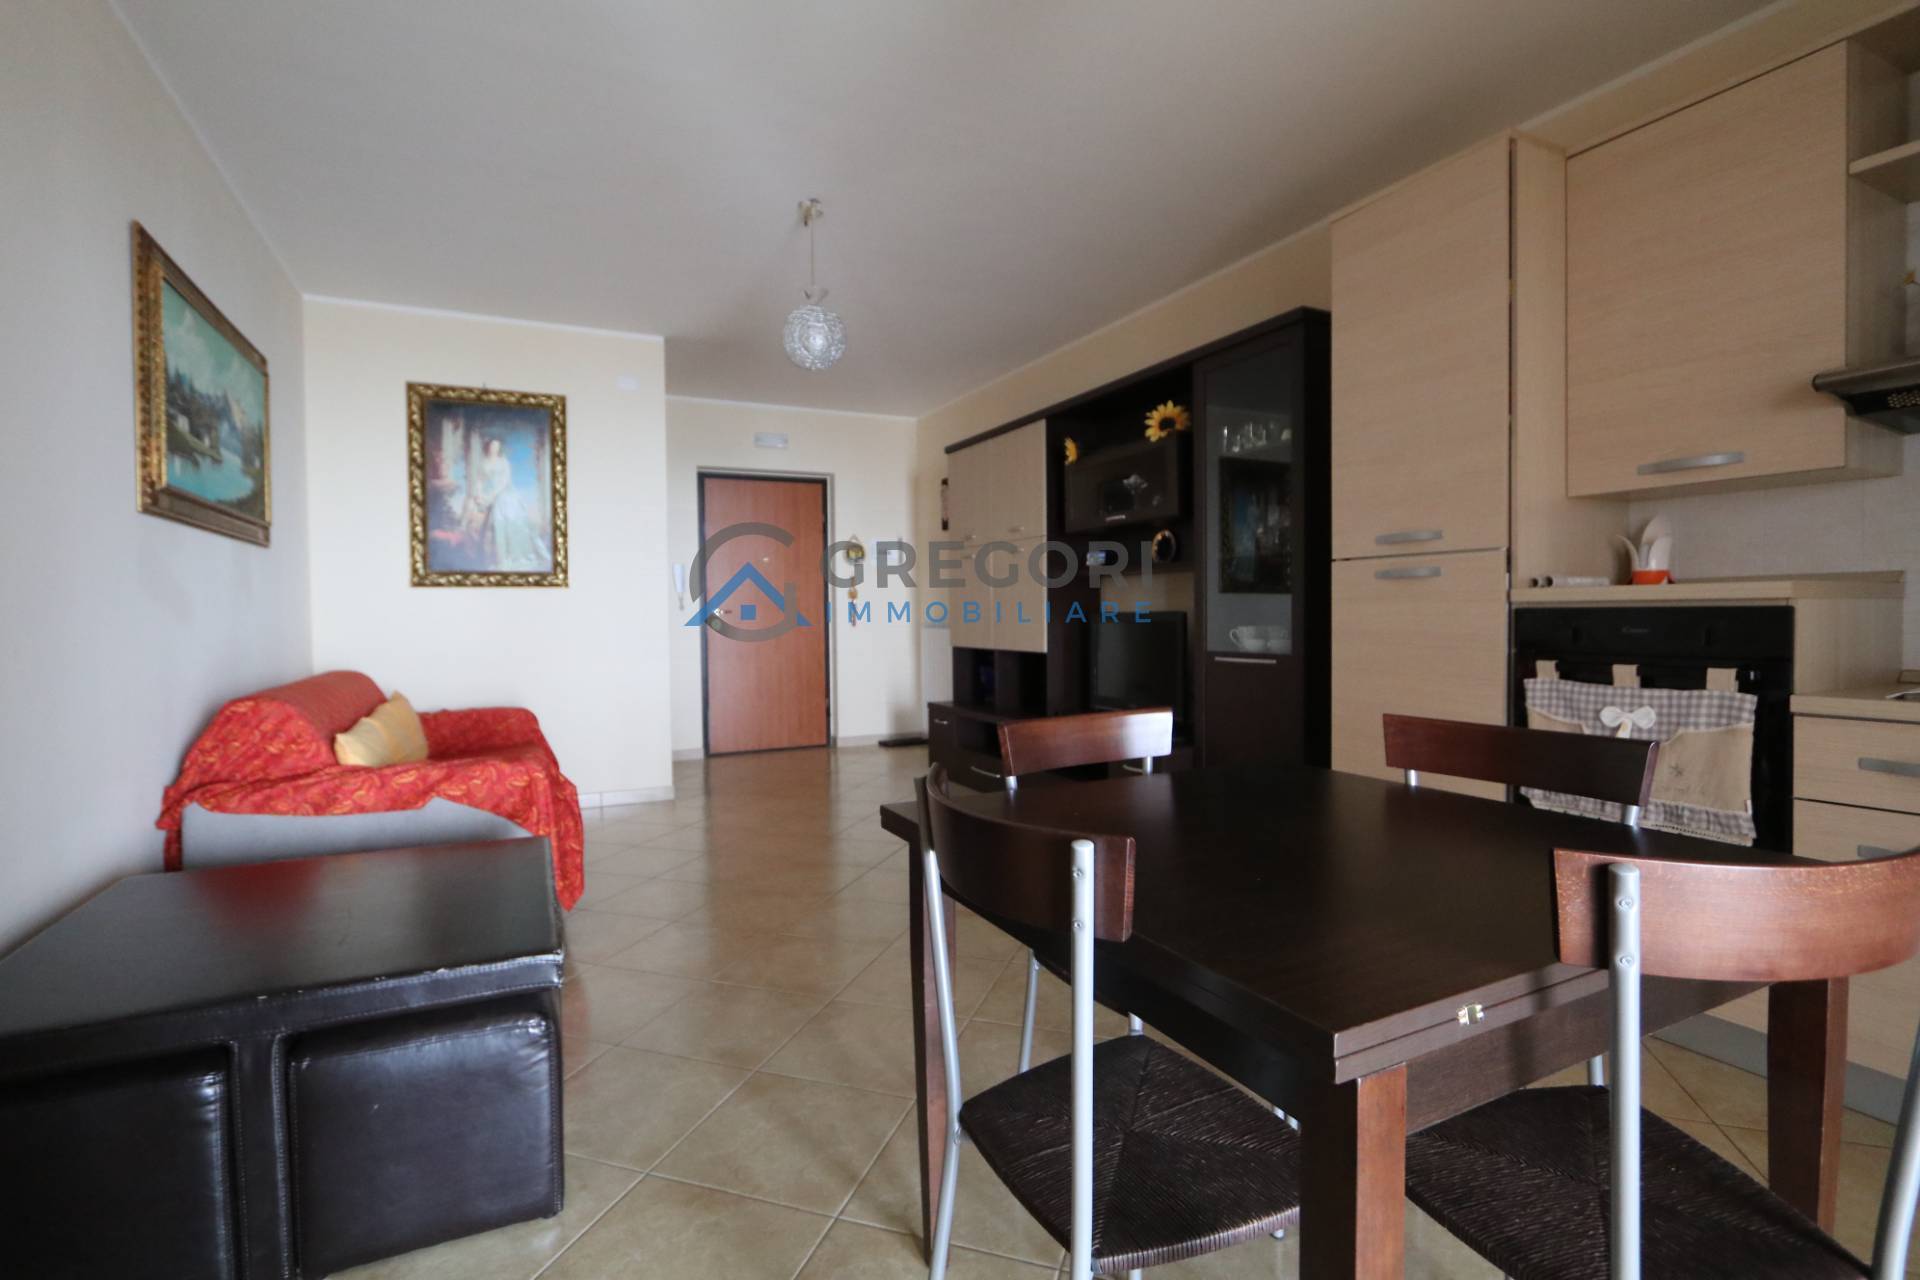 Appartamento in vendita a Colonnella, 3 locali, prezzo € 120.000 | PortaleAgenzieImmobiliari.it